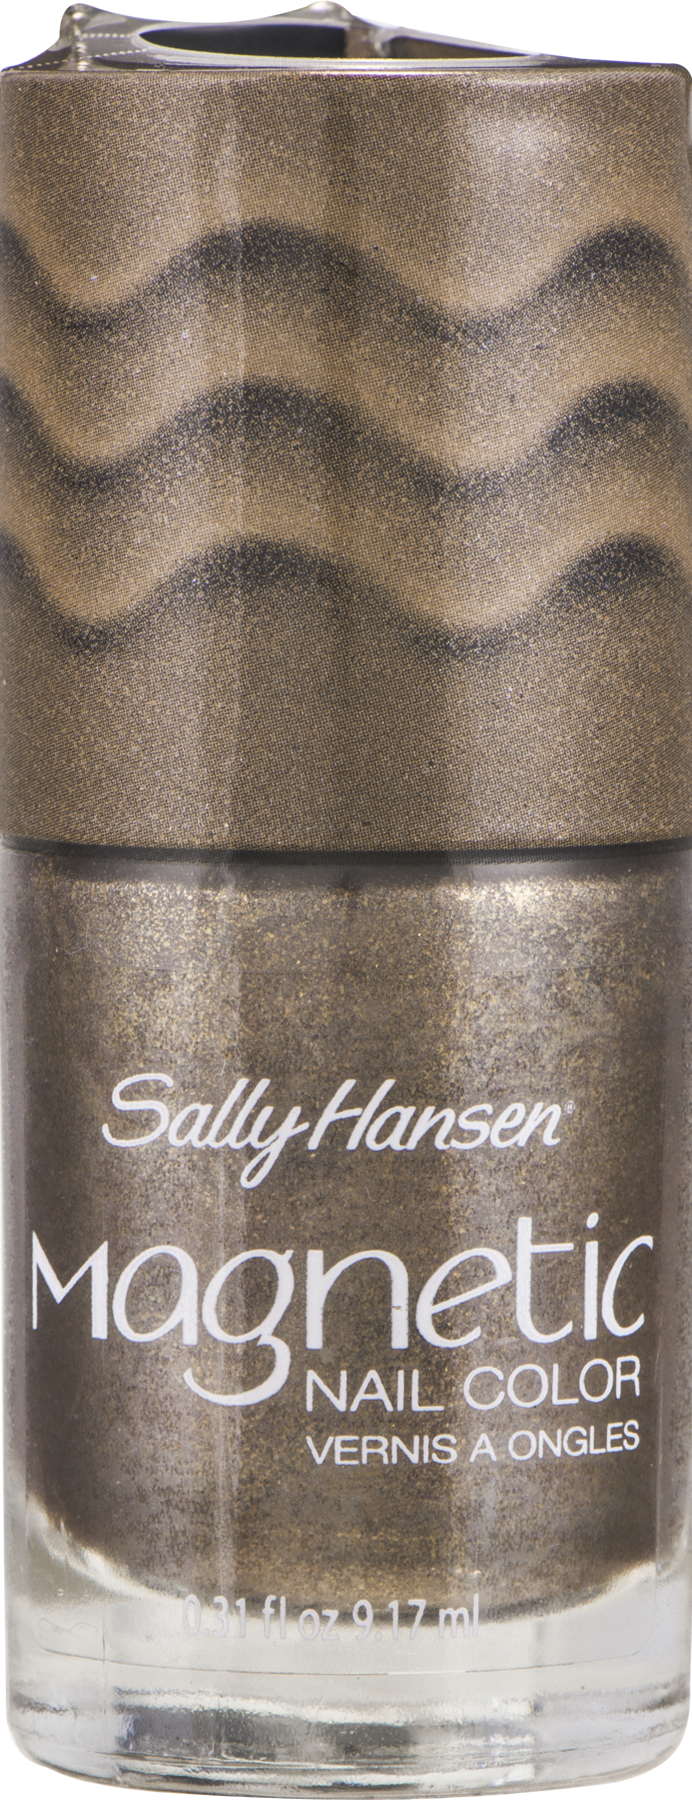 Sally Hansen Magnetic - Golden - Walmart.com